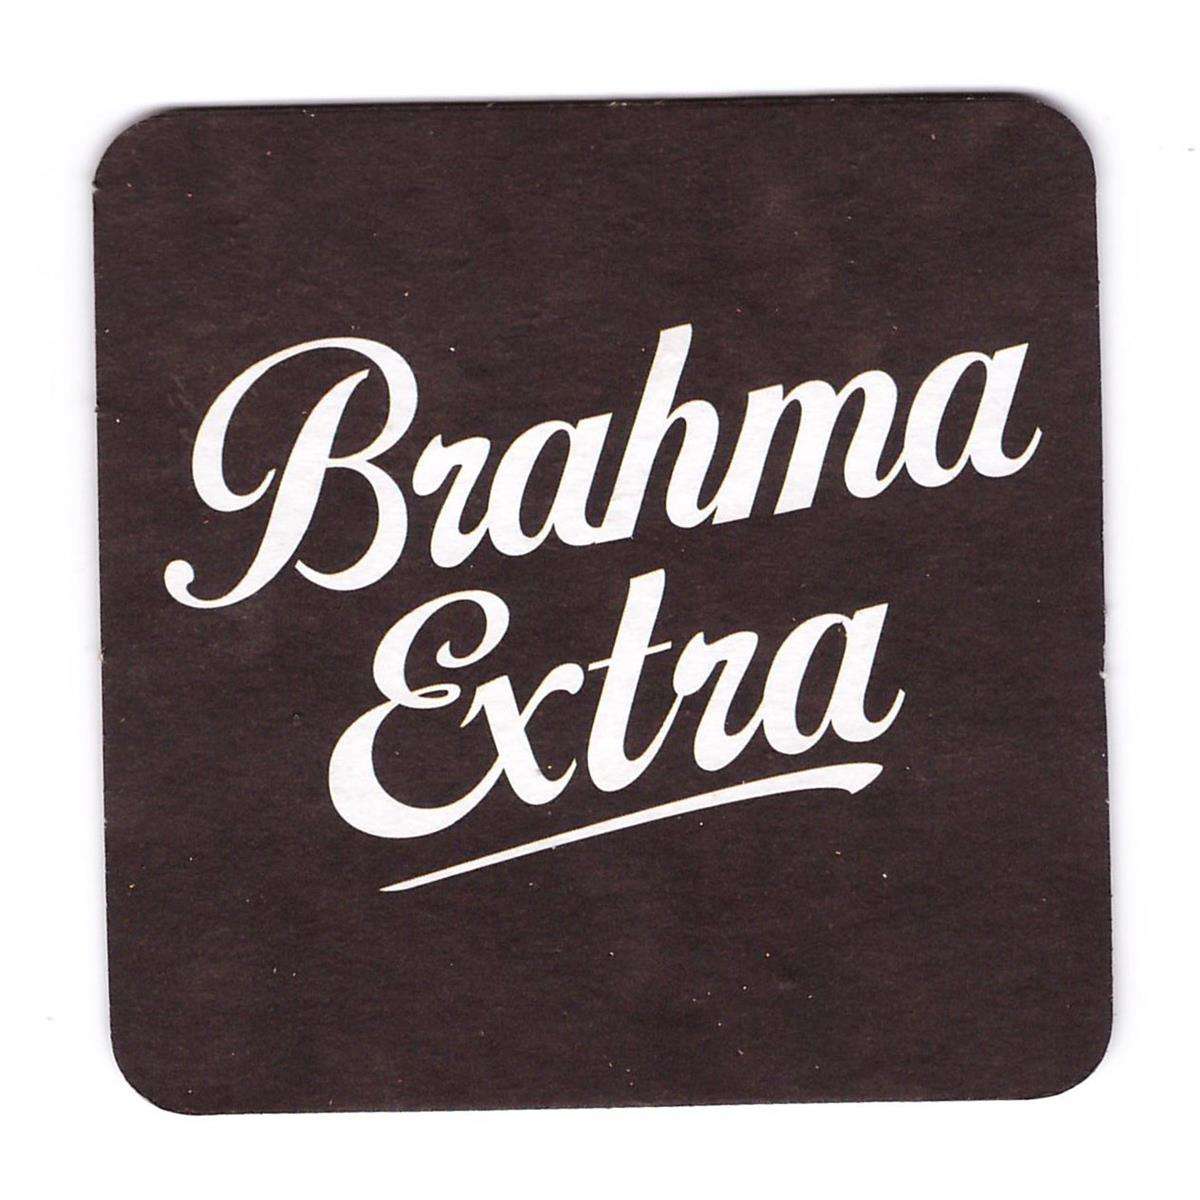 Brahma Extra quadrada